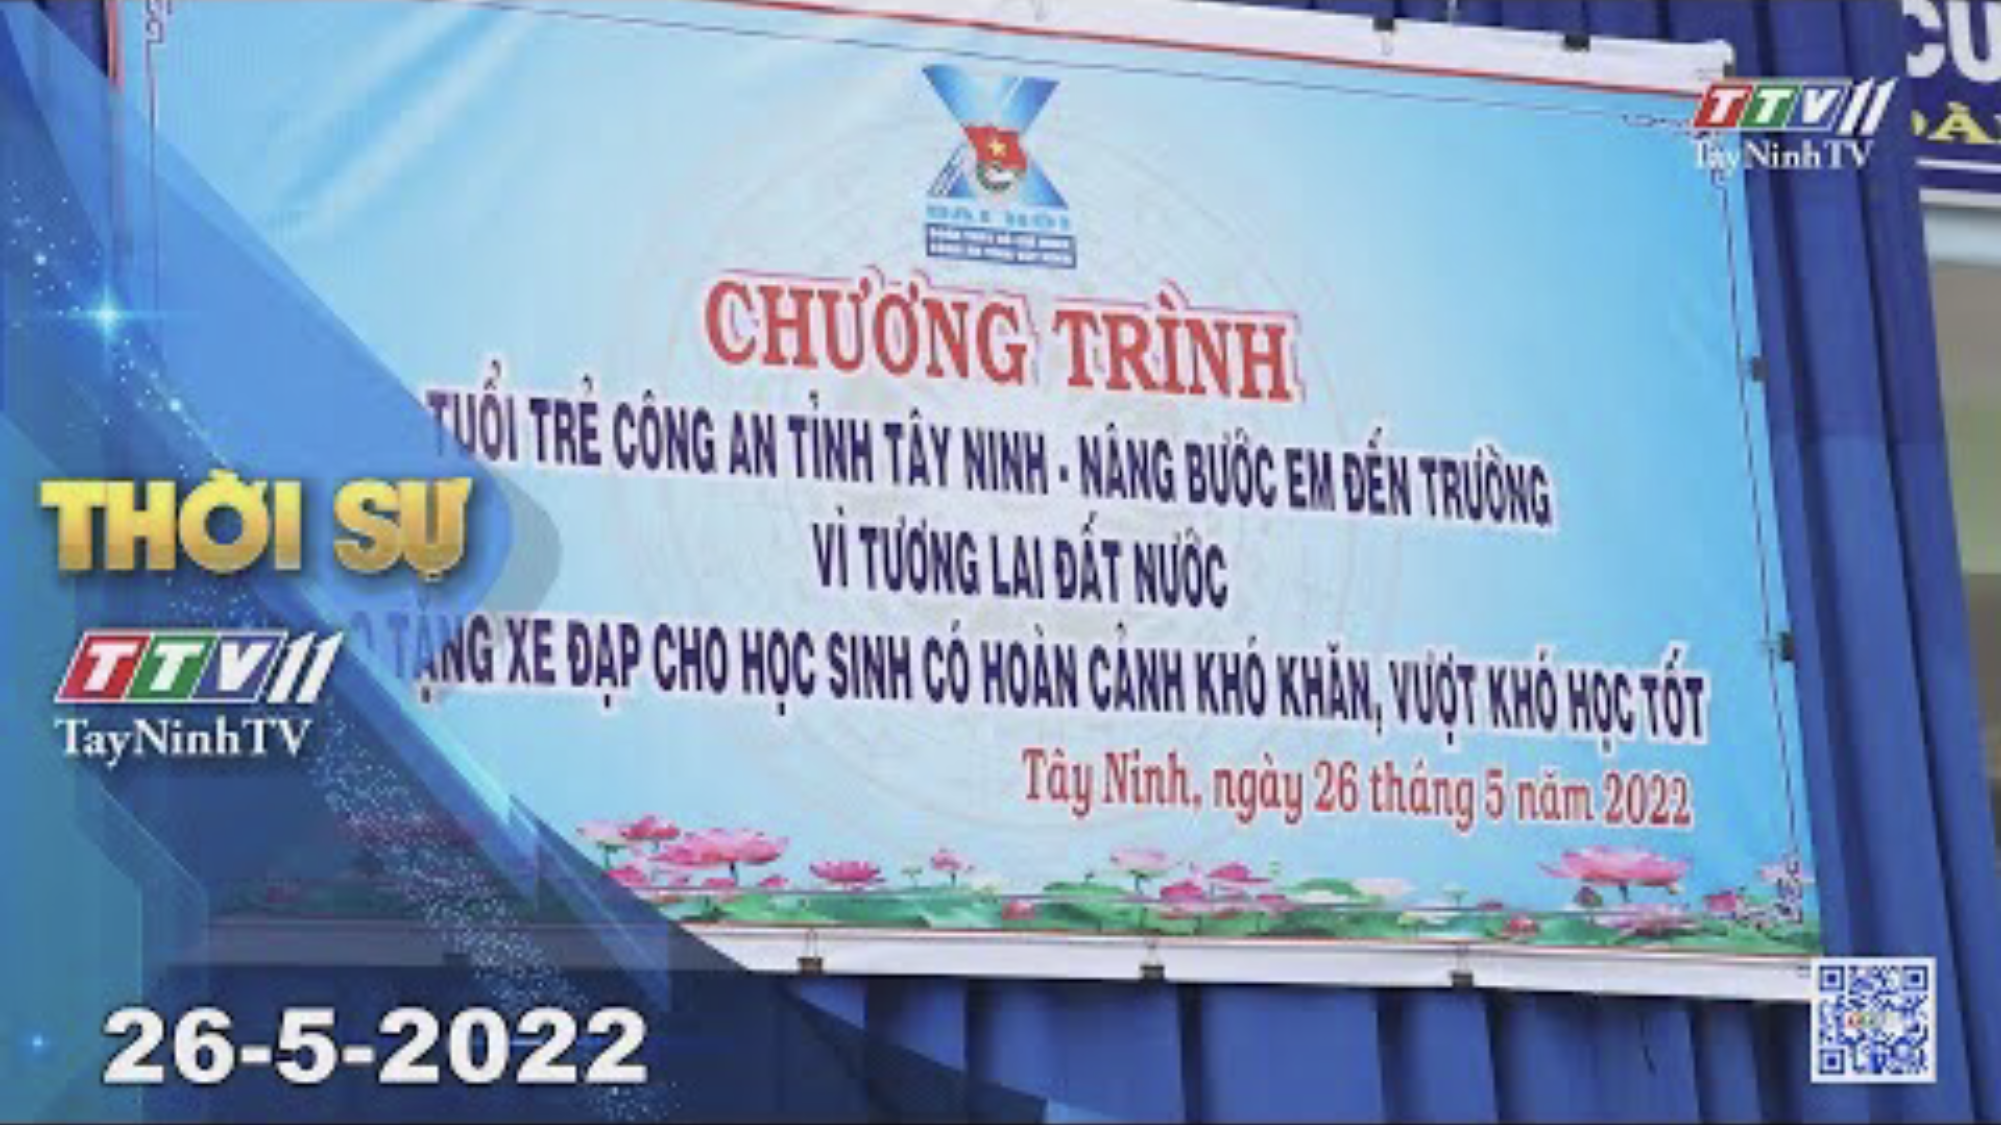 Thời sự Tây Ninh 26-5-2022 | Tin tức hôm nay | TayNinhTV